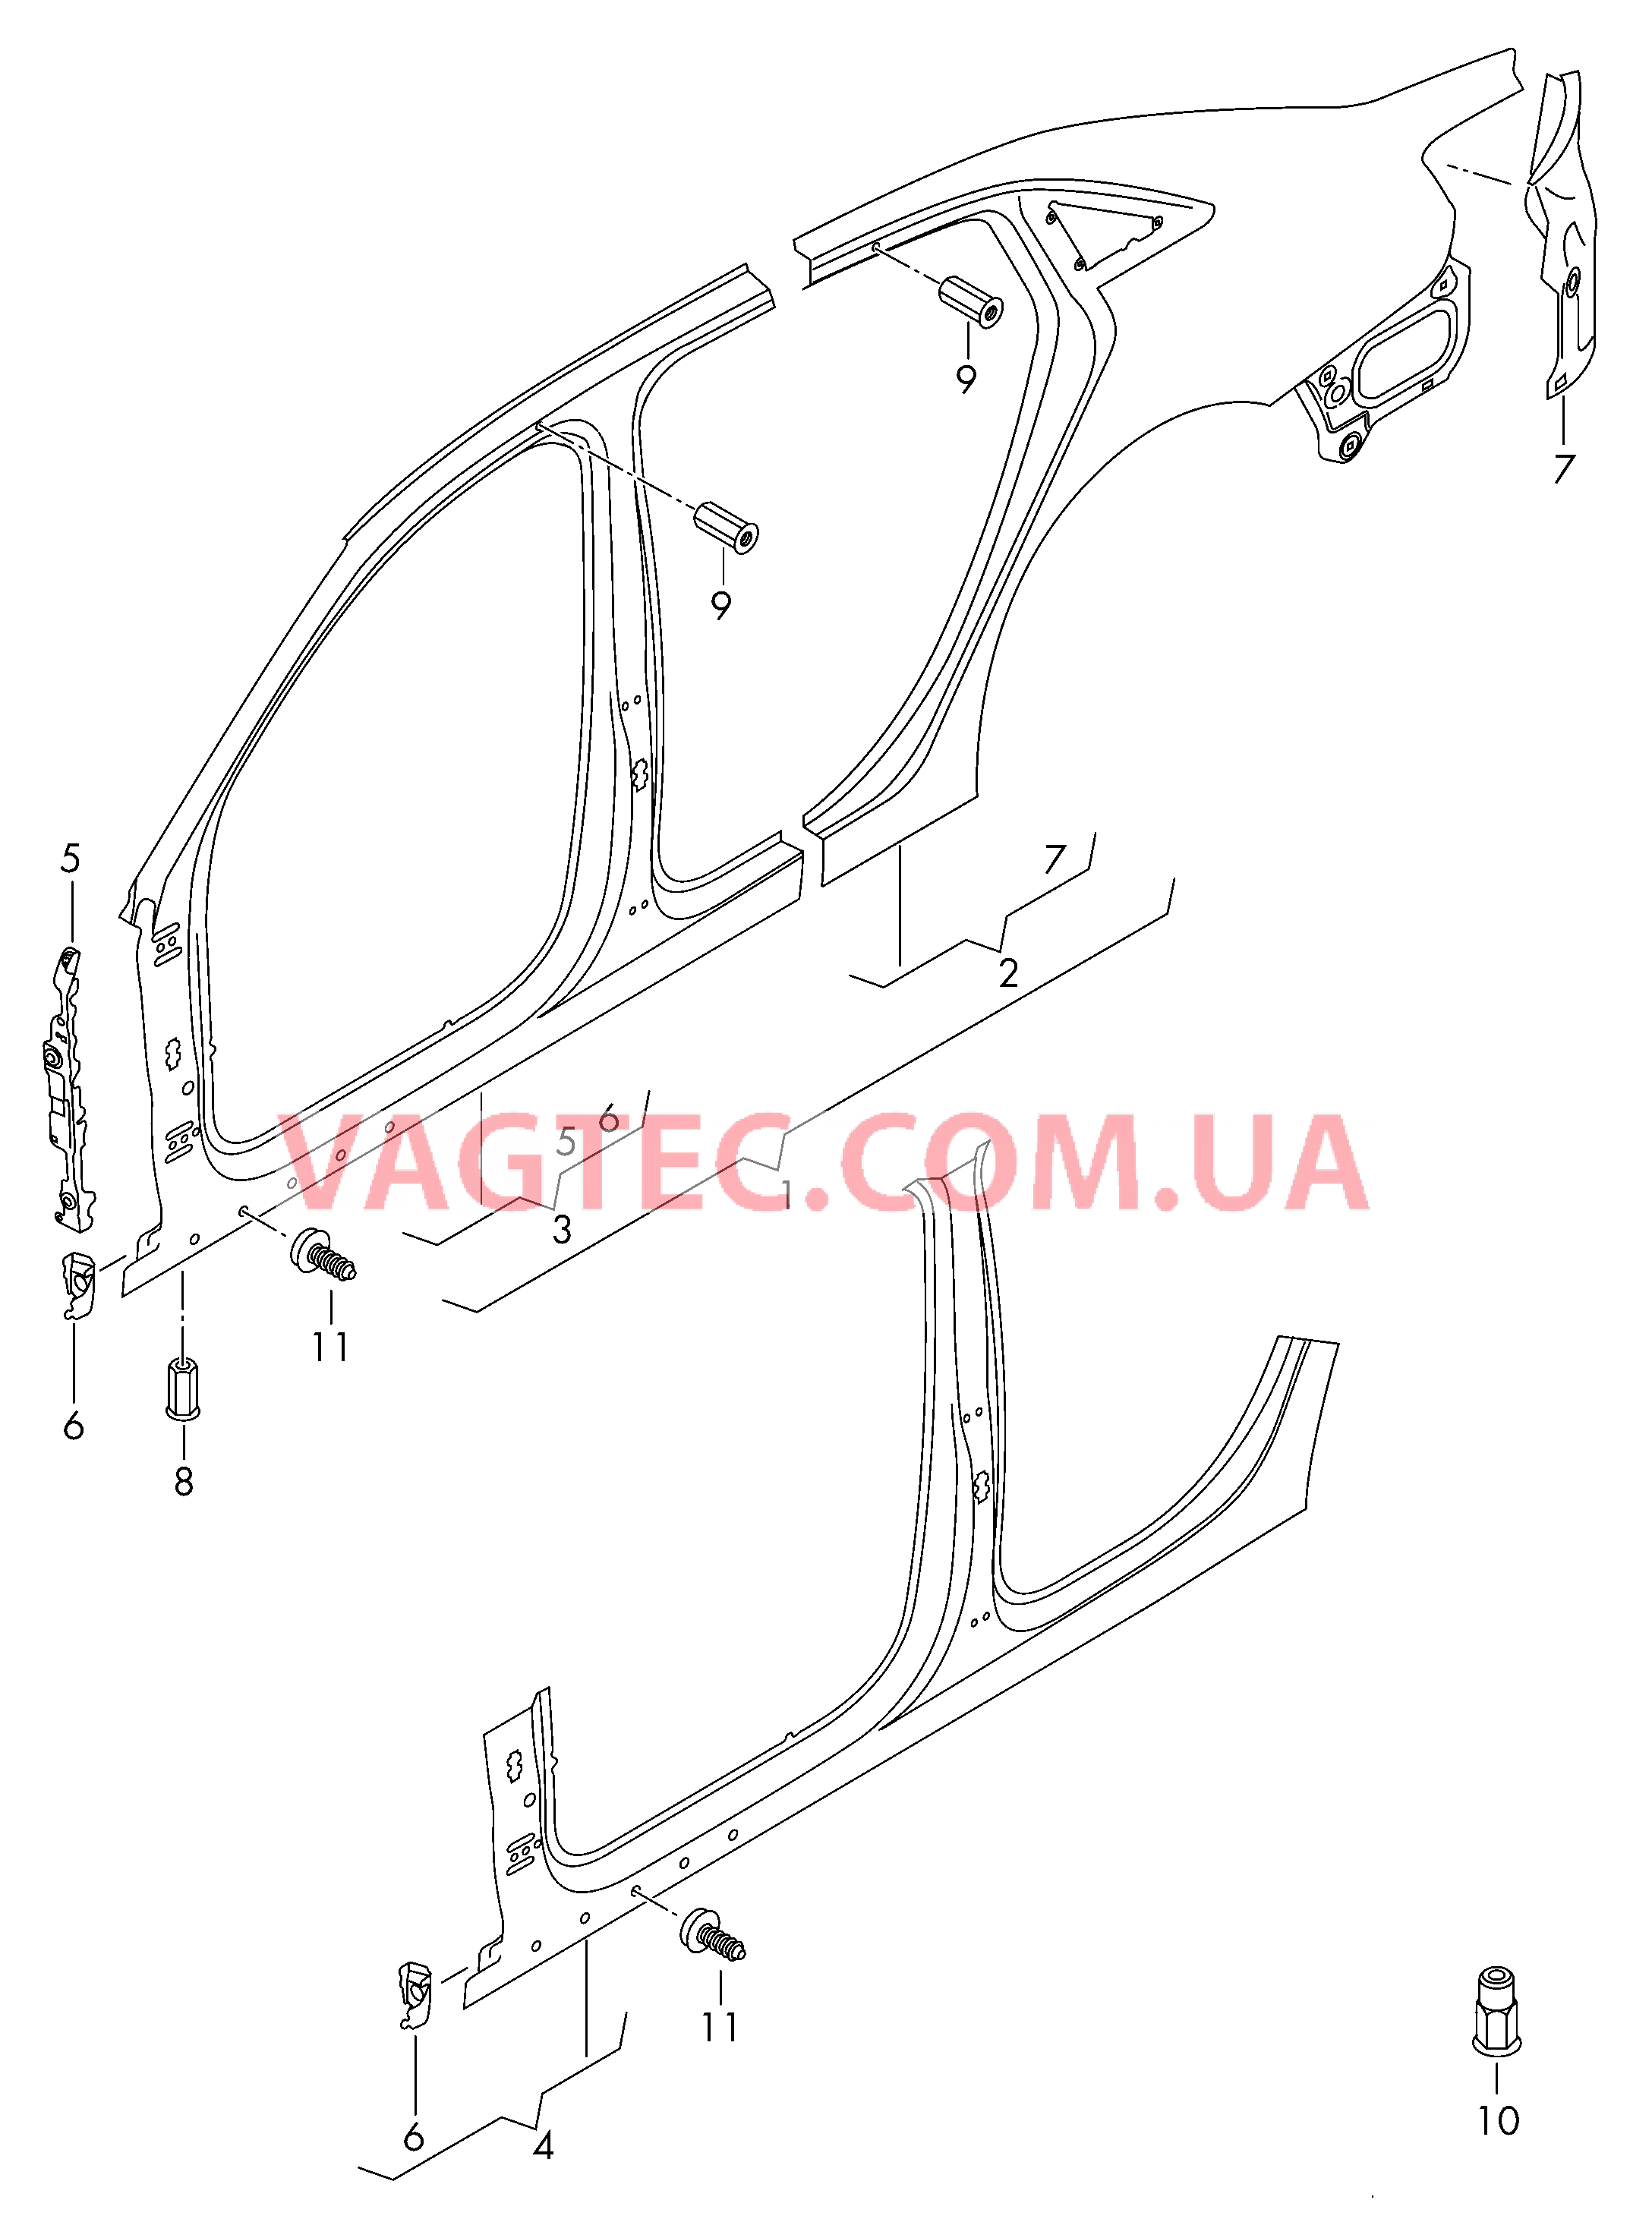 Pама боковой стенки Отрезная деталь боковина  для AUDI A3 2018